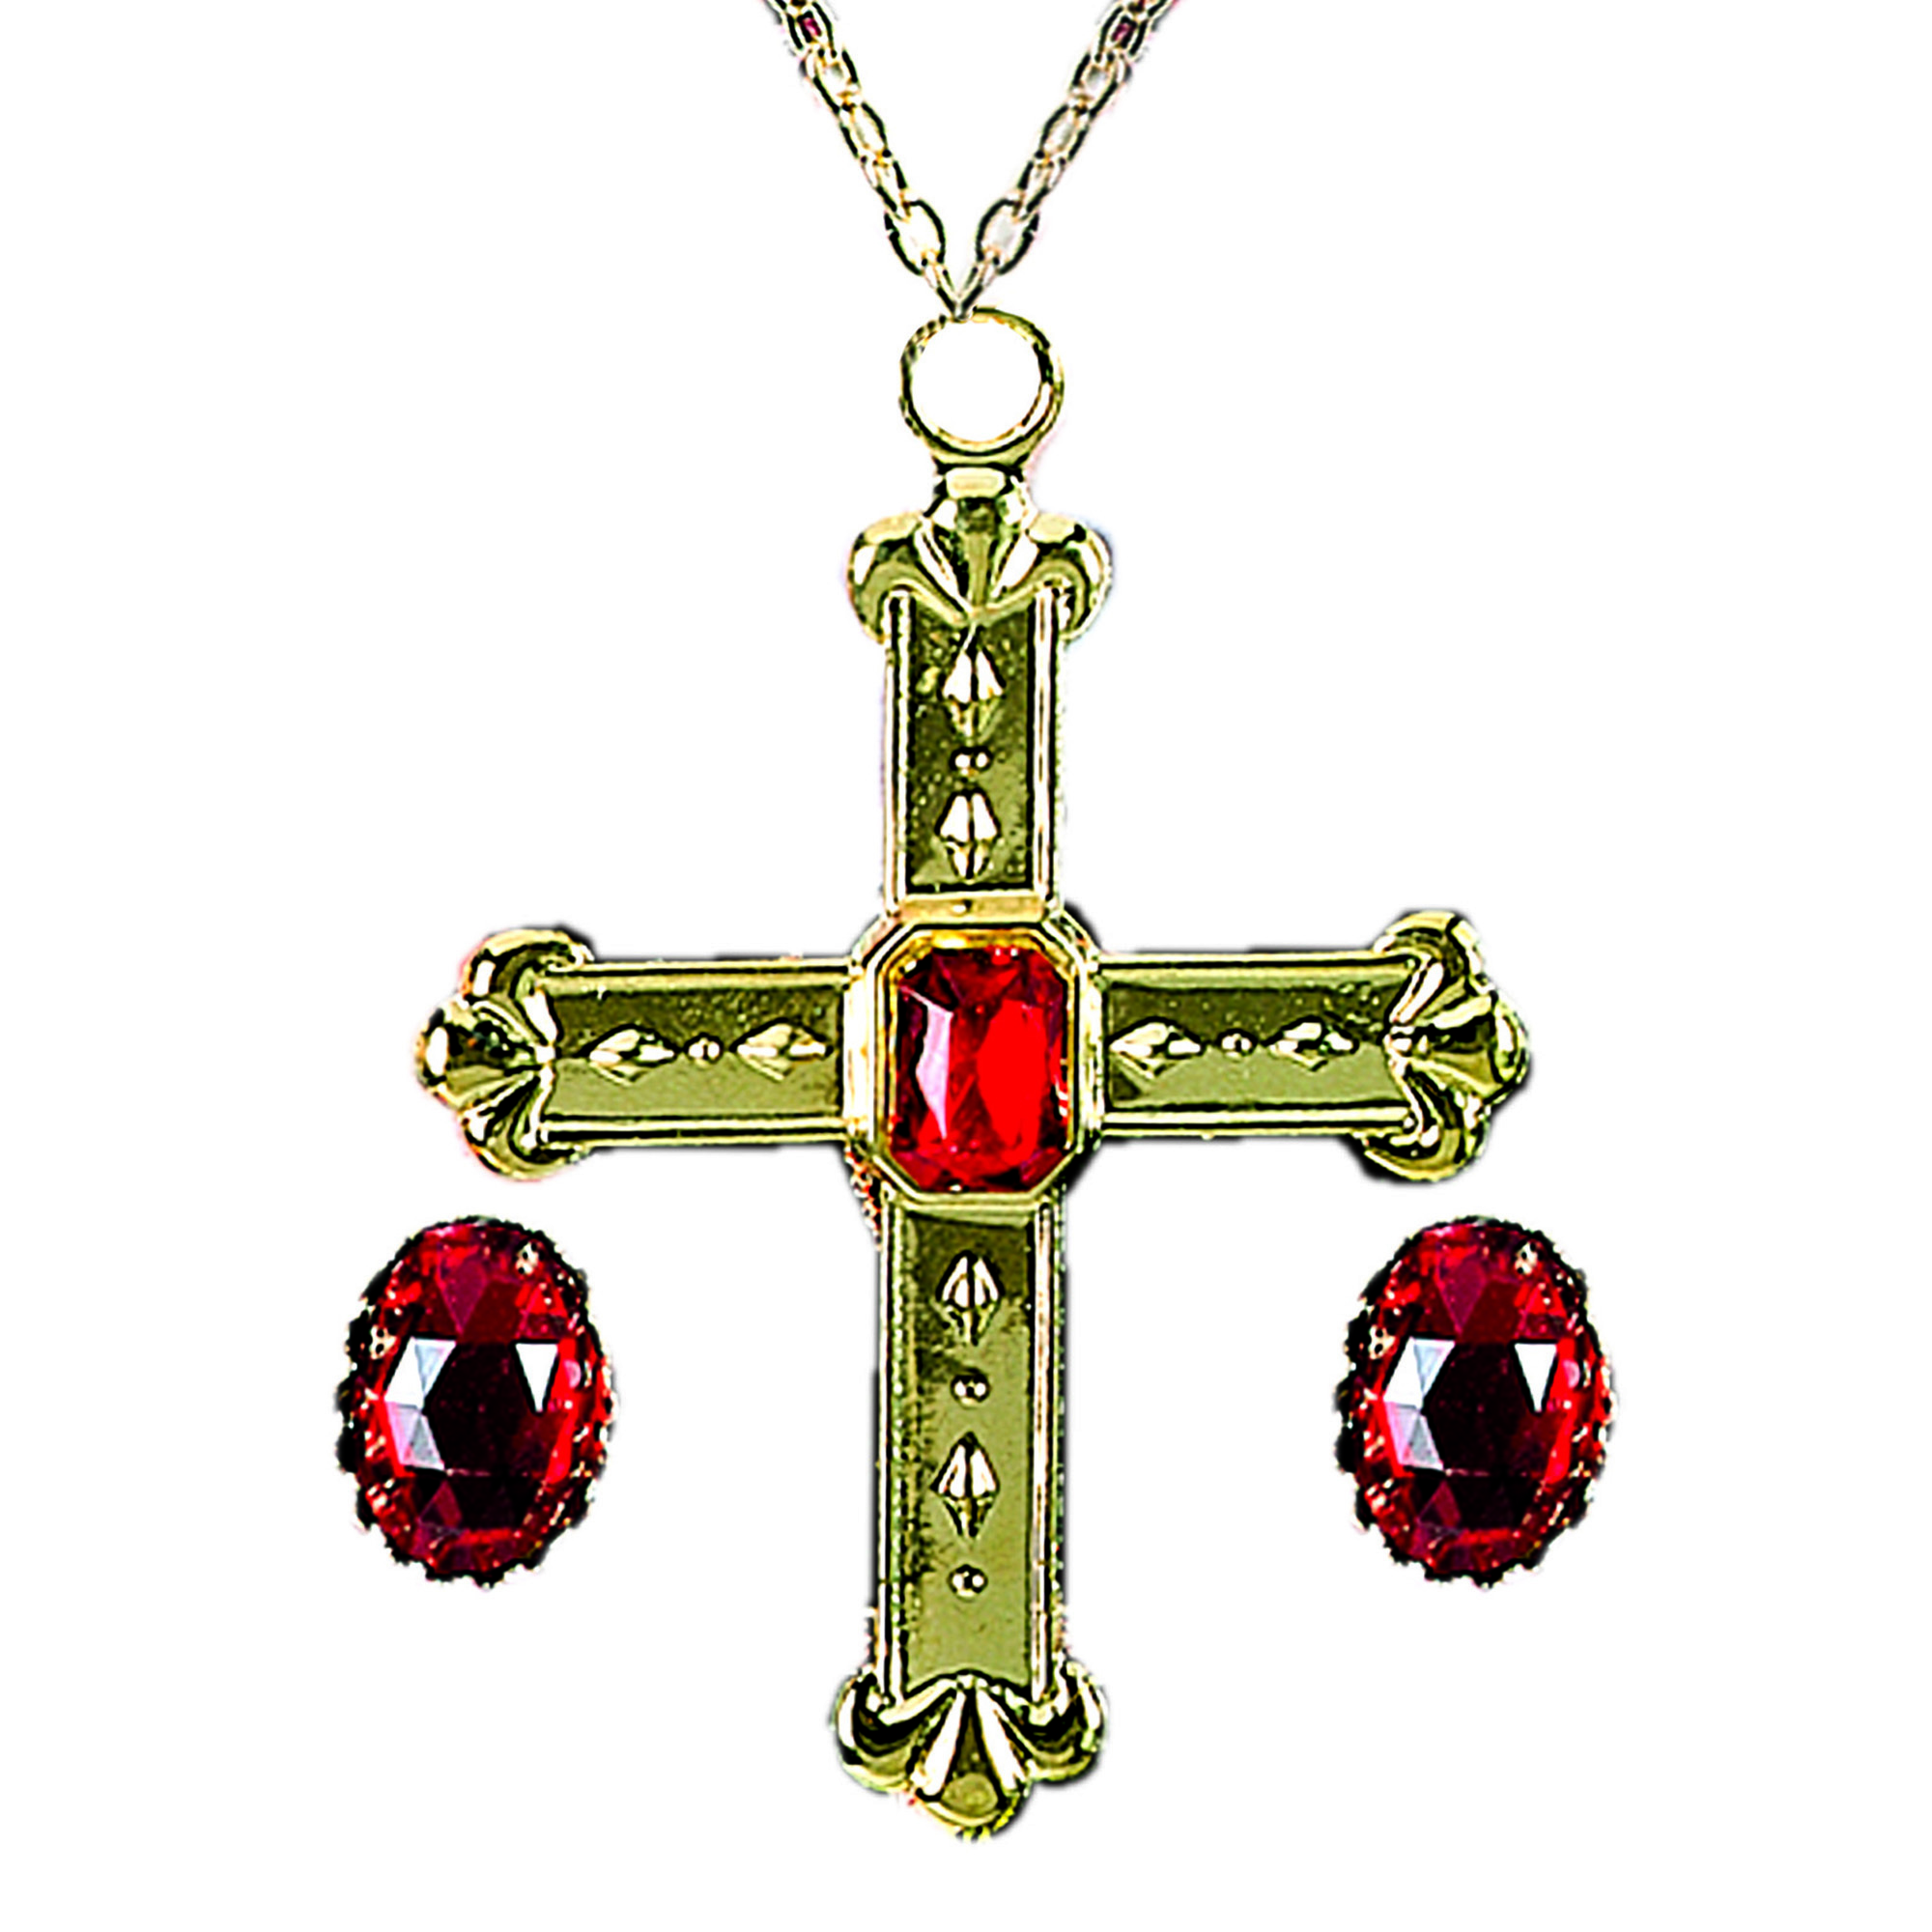 Kardinaal set twee ringen met rode steen en ketting met rode steen.